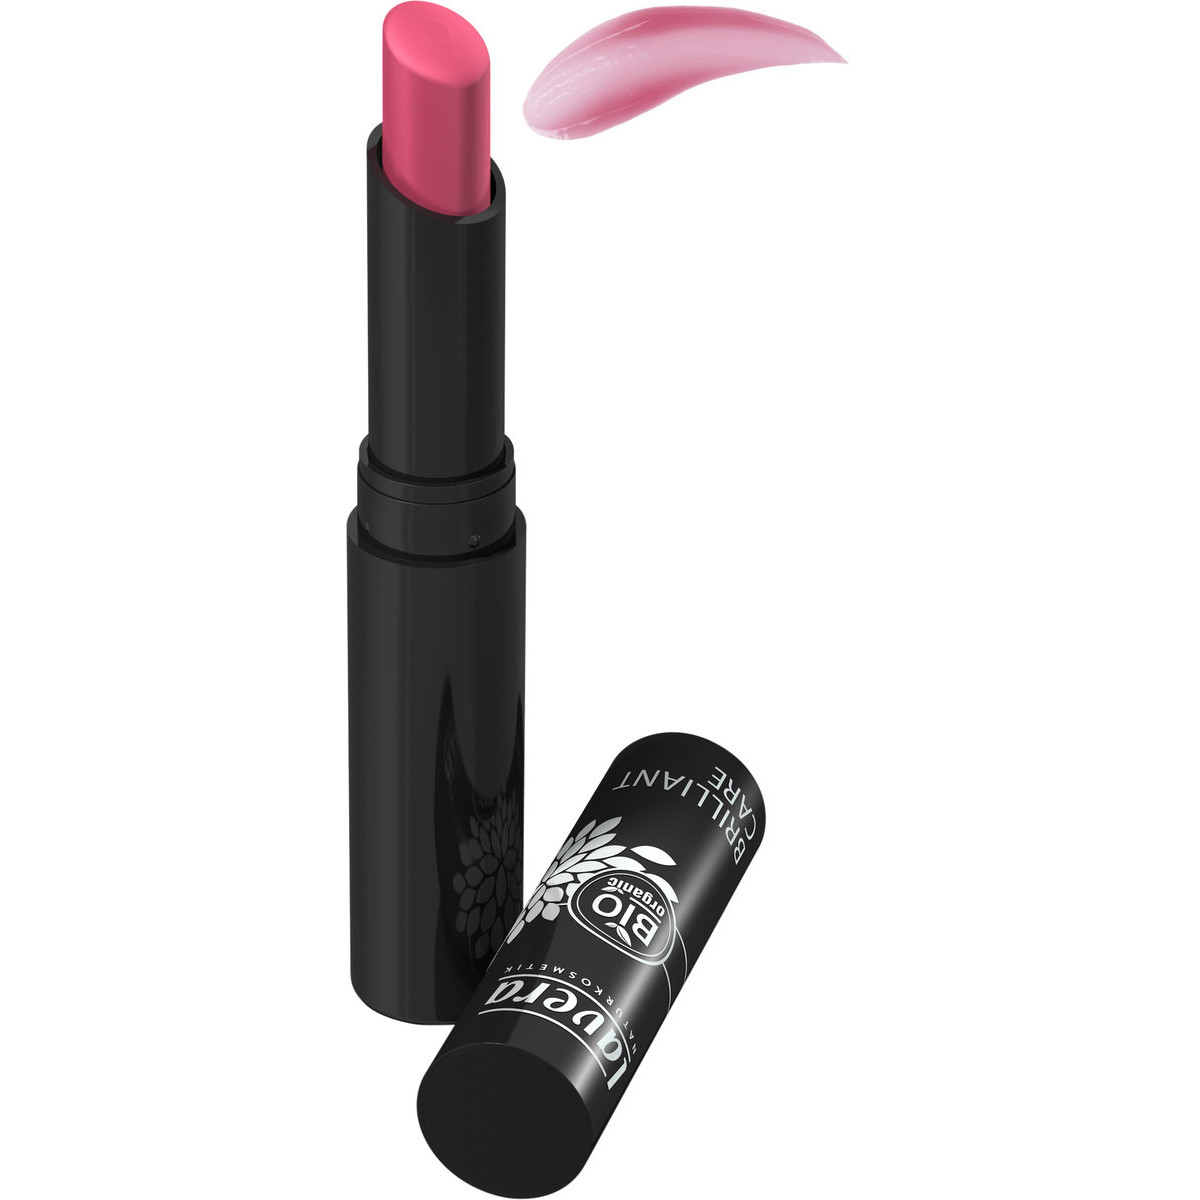 Brilliant Care Lipstick Strawberry Pink n°02 - 2,85g- Lavera